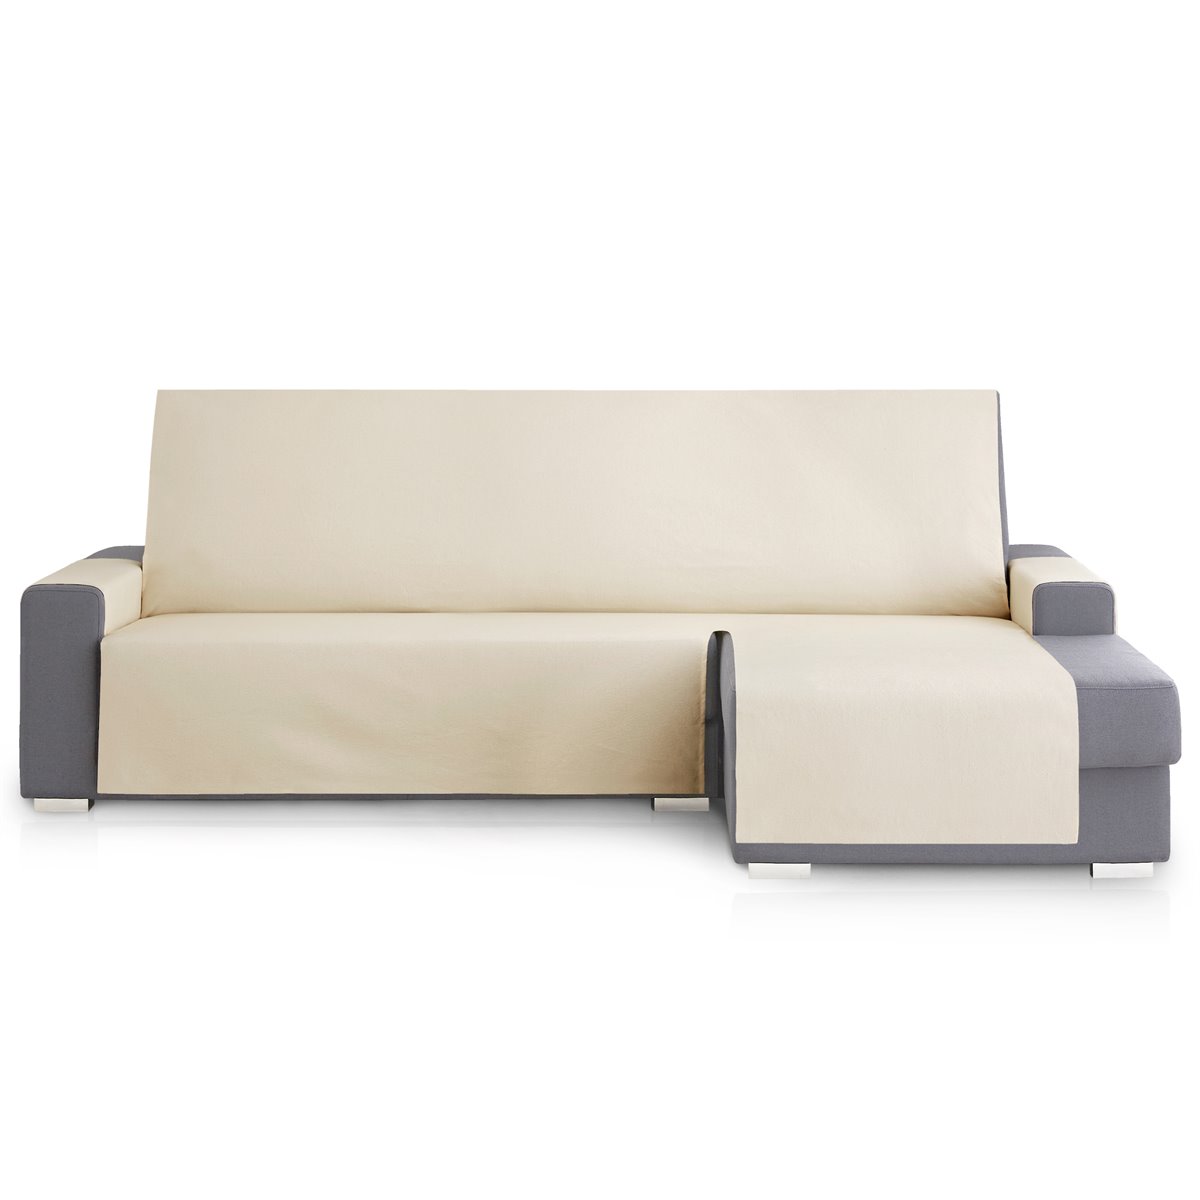 Funda cubre sofá protector liso 155 cm beige ROYALE